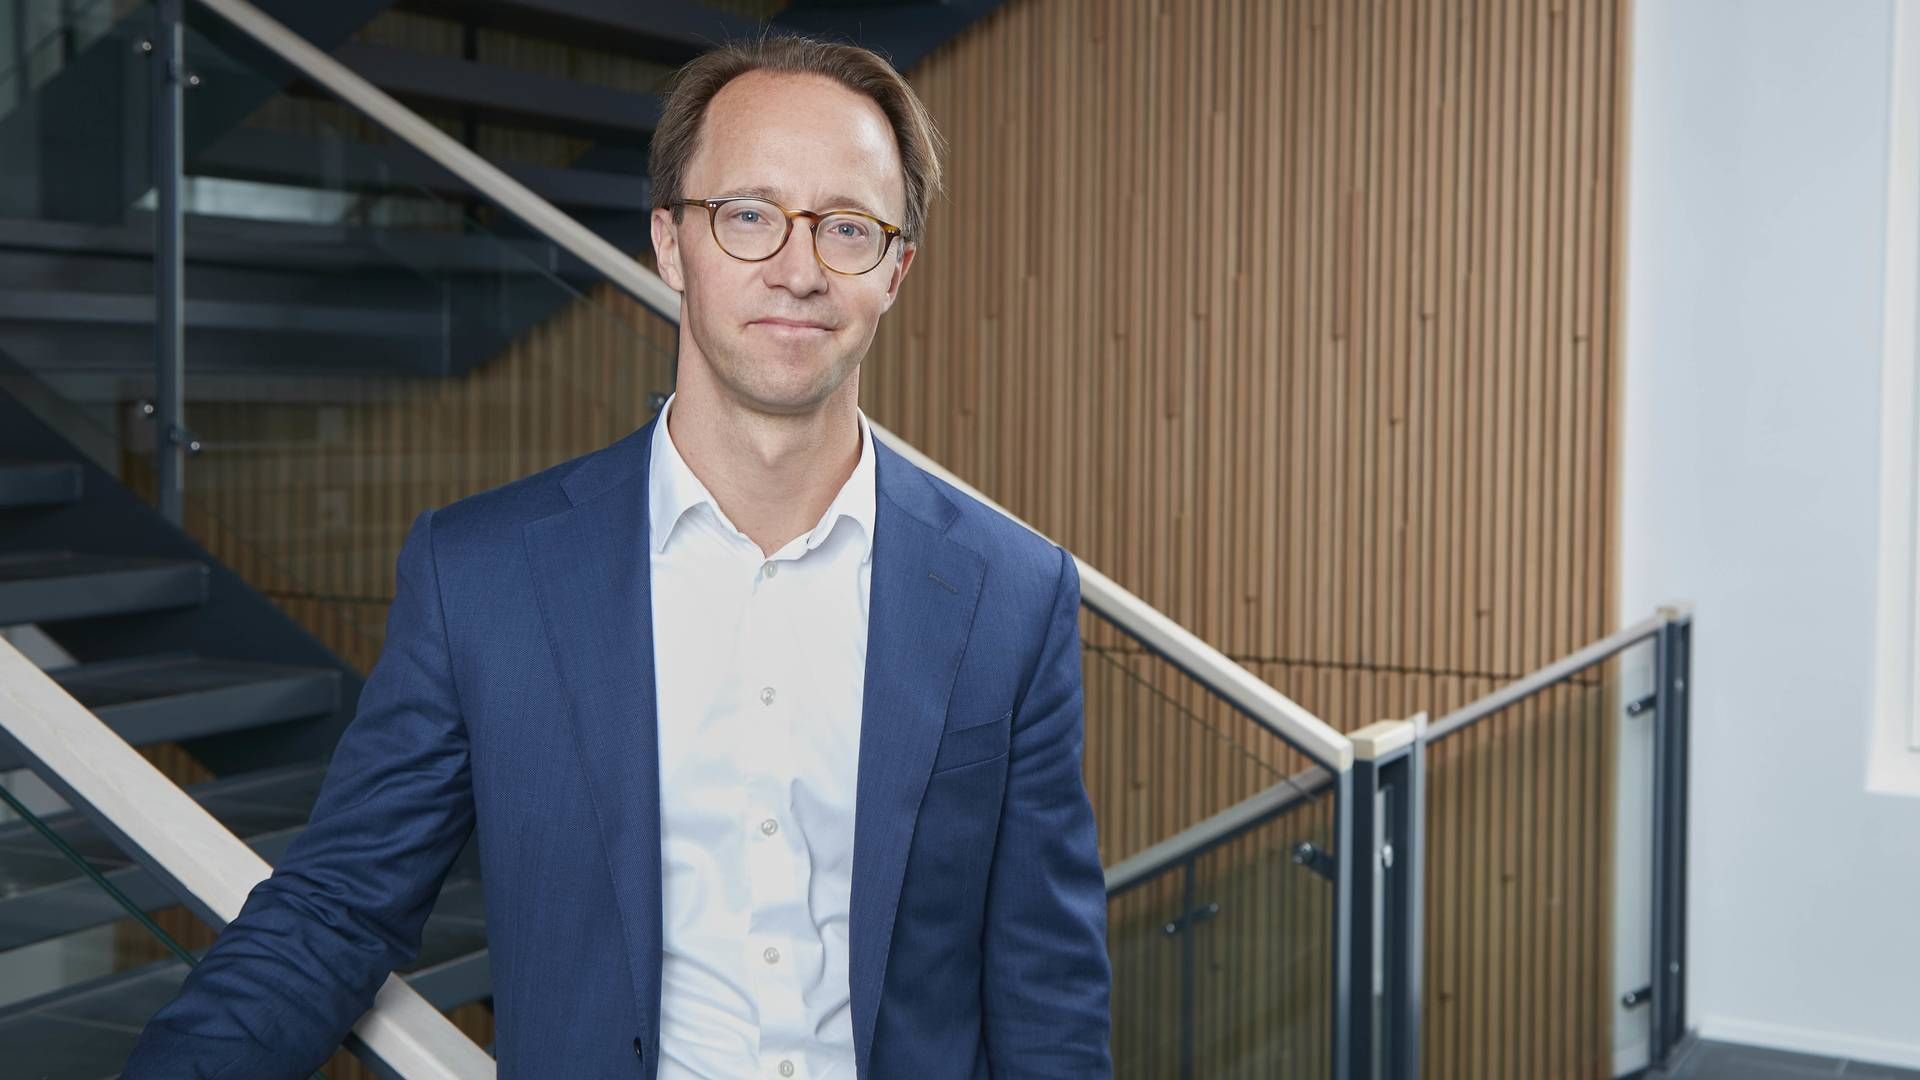 KJØPER: Mikkel Bardram er administrerende direktør i det danske IT-selskapet EG, som nå kjøper flere av Patientskys datterselskaper. | Foto: EG / Morten Bak / PR